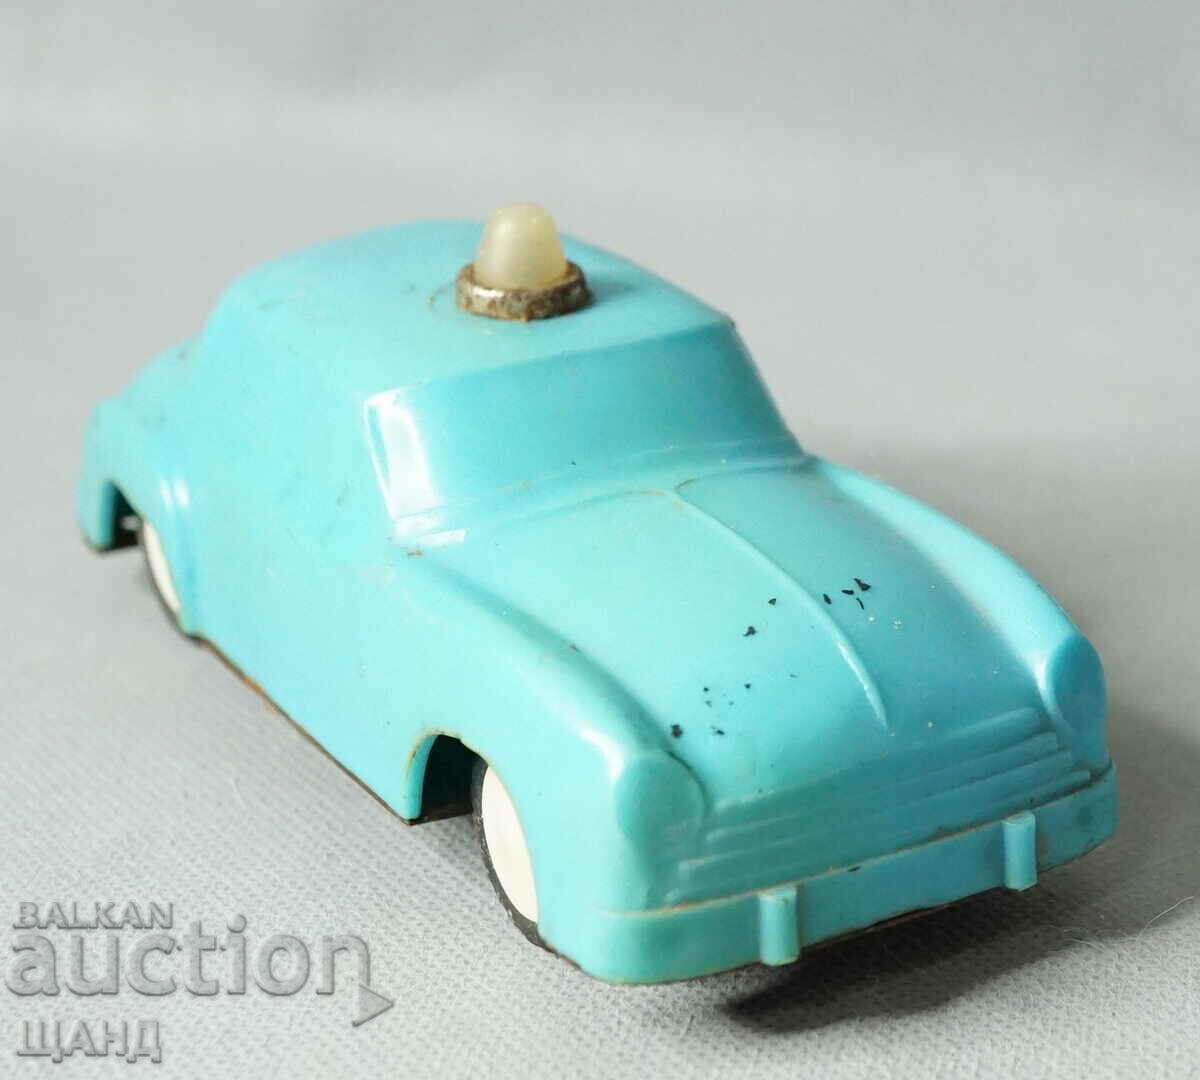 Stara Soc. Plastic toy model car police